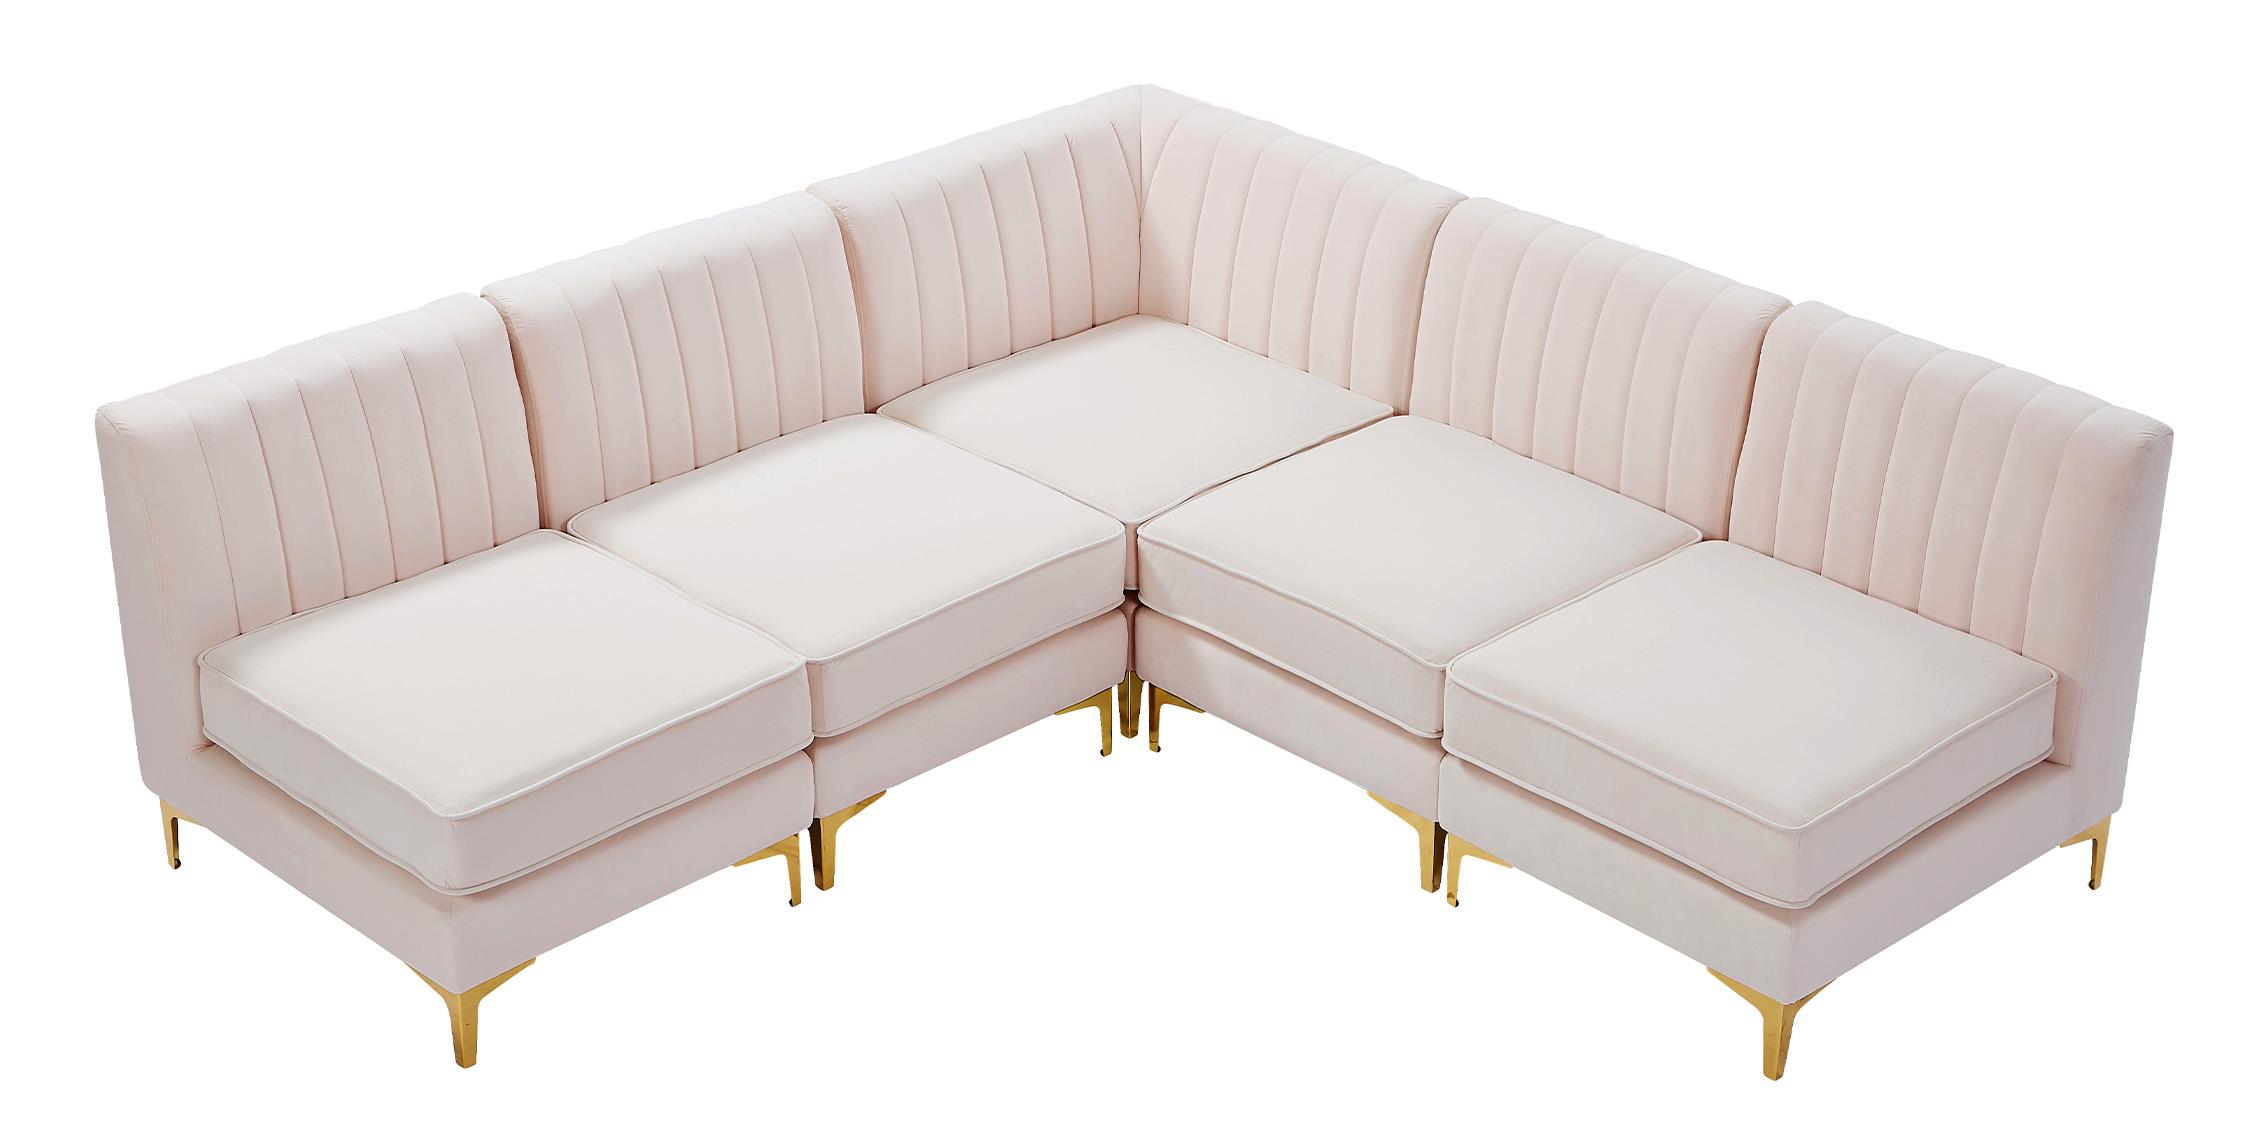 

    
Meridian Furniture ALINA 604Pink-Sec5A Modular Sectional Sofa Pink 604Pink-Sec5A
